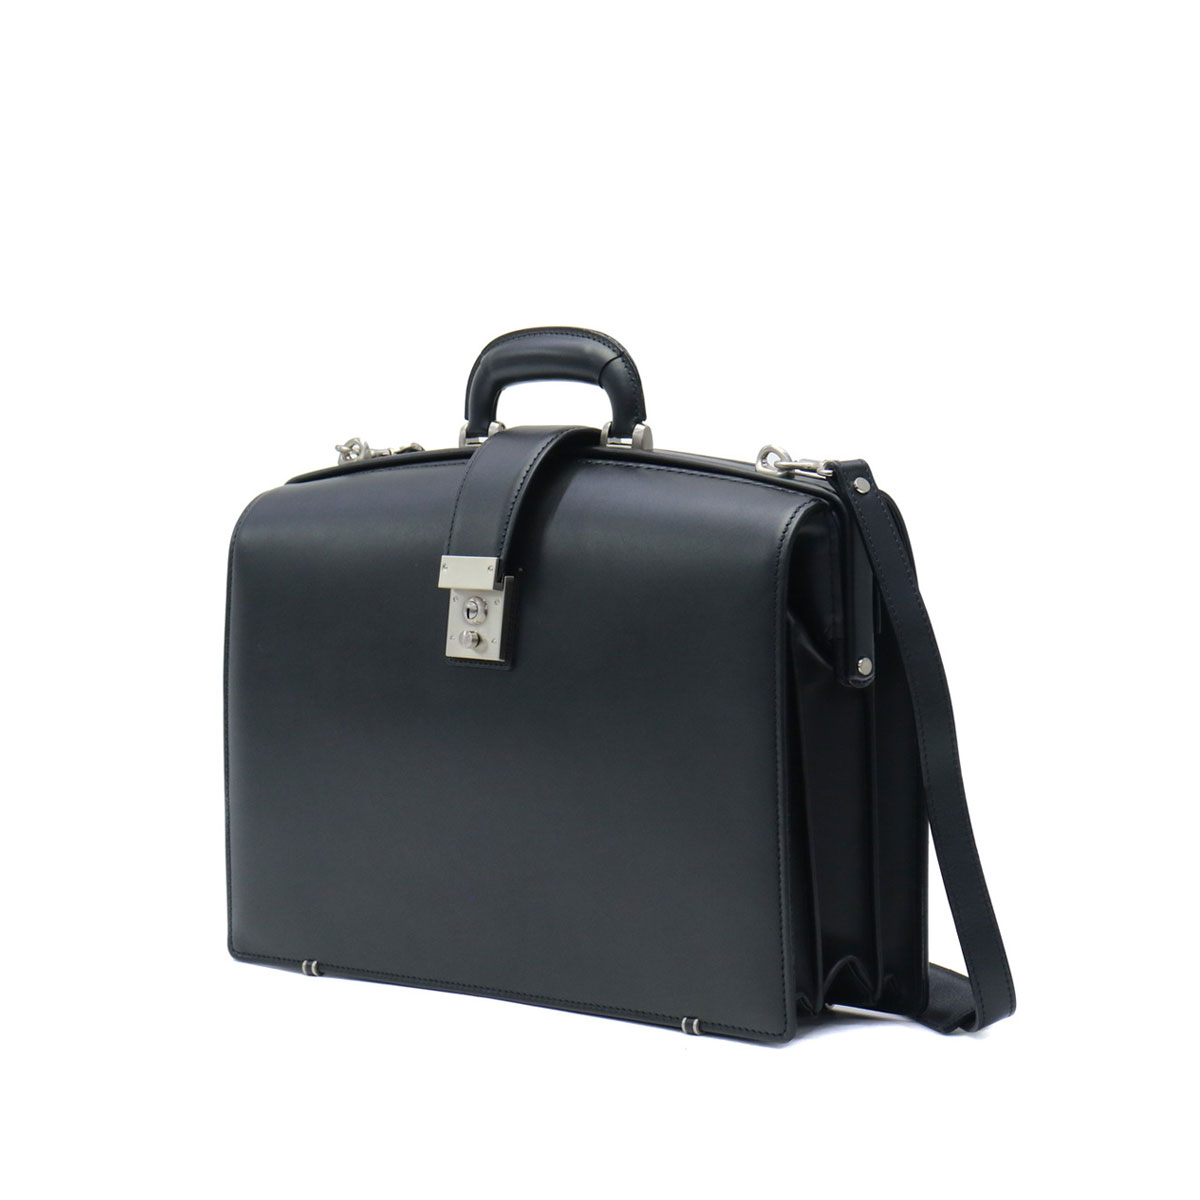 濃いピンク系統 新品 青木鞄 ビジネスバッグ 2way 牛革 黒 アオキ